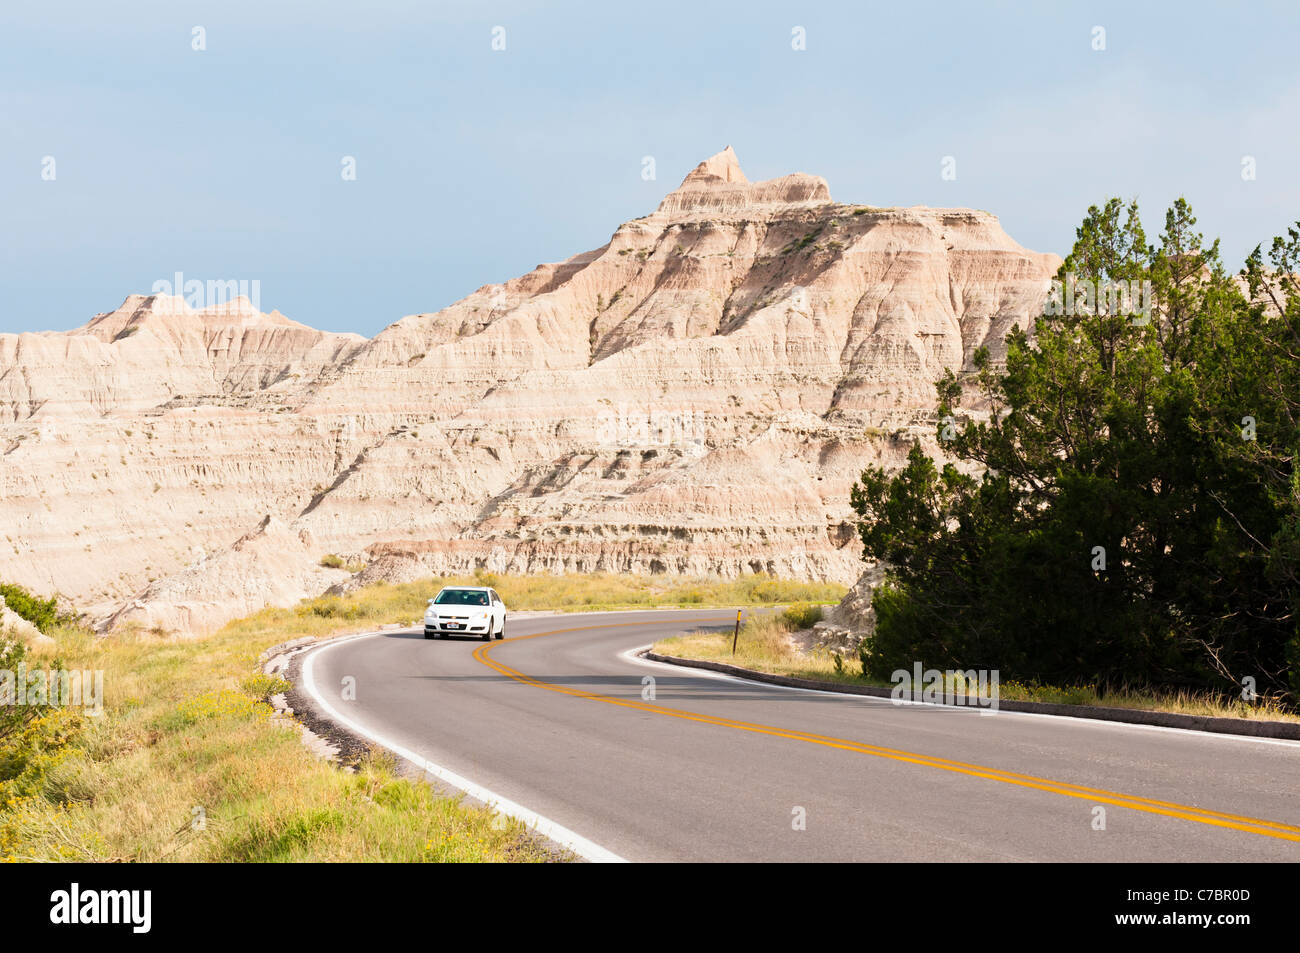 Les touristes en voiture à travers le Parc National de Badlands, dans le Dakota du Sud. Banque D'Images